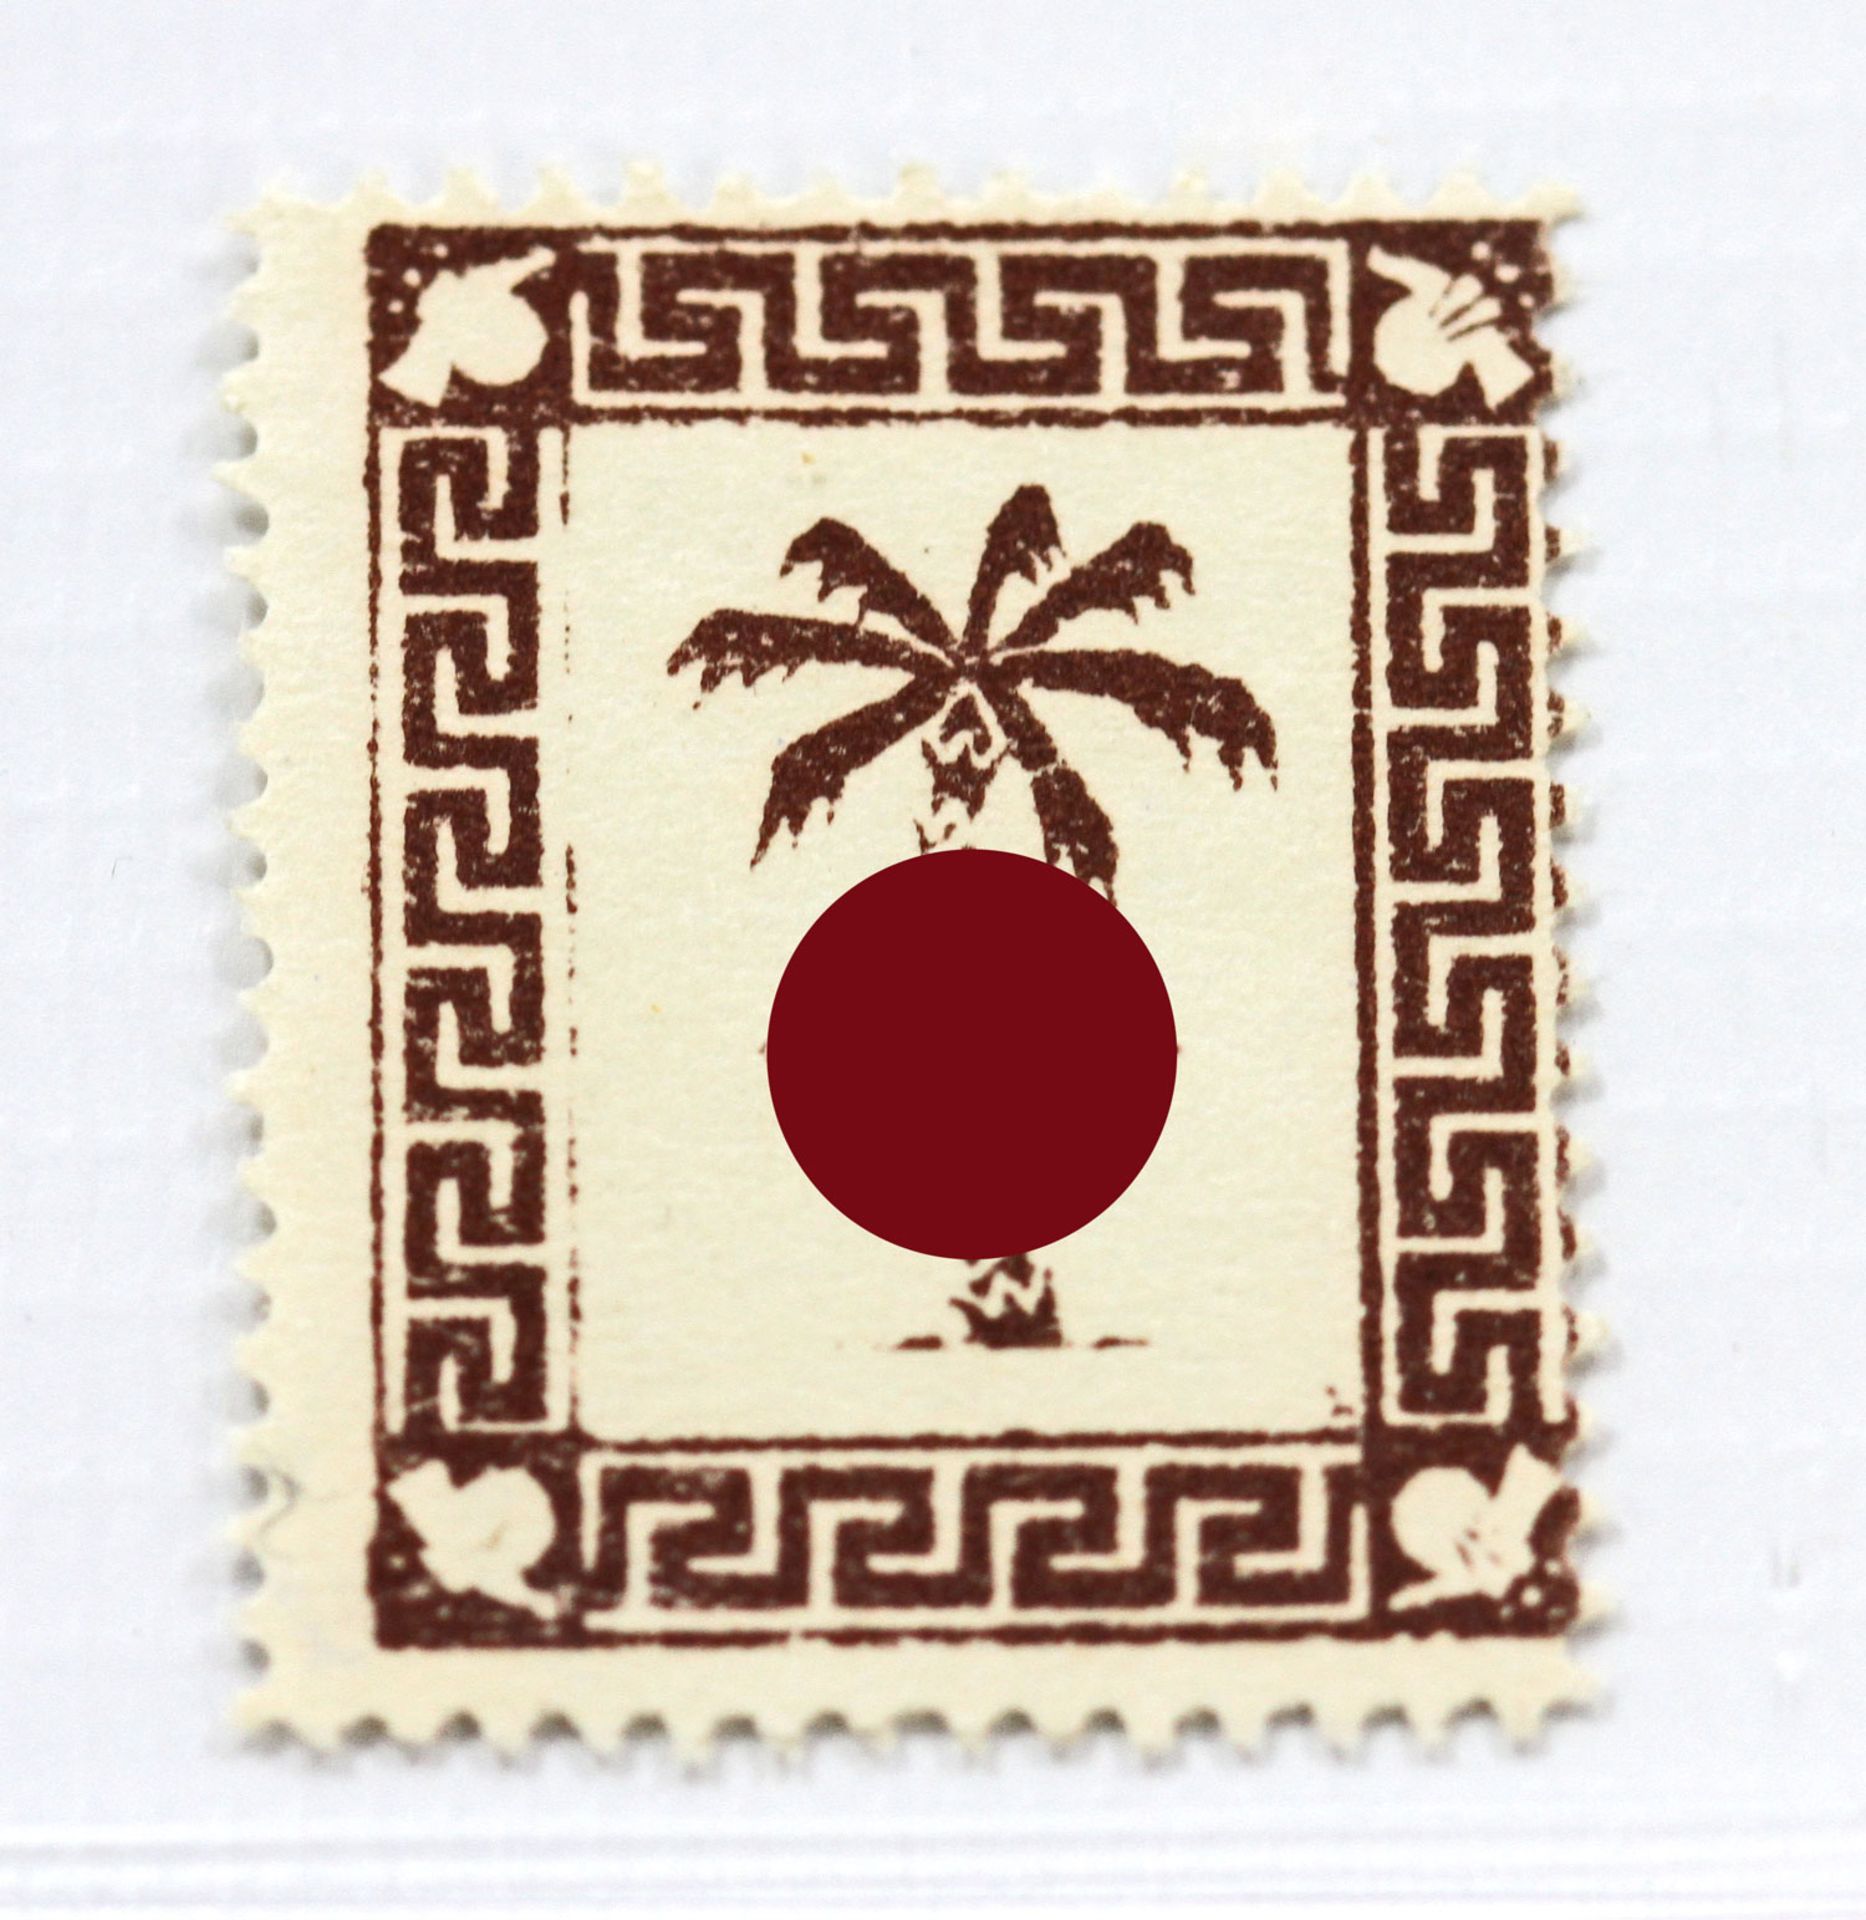 Feldpostmarken - Tunis Marke Michel Nr. 5a, in guter Erhaltung. Marke ist nachgummiert! Signatur